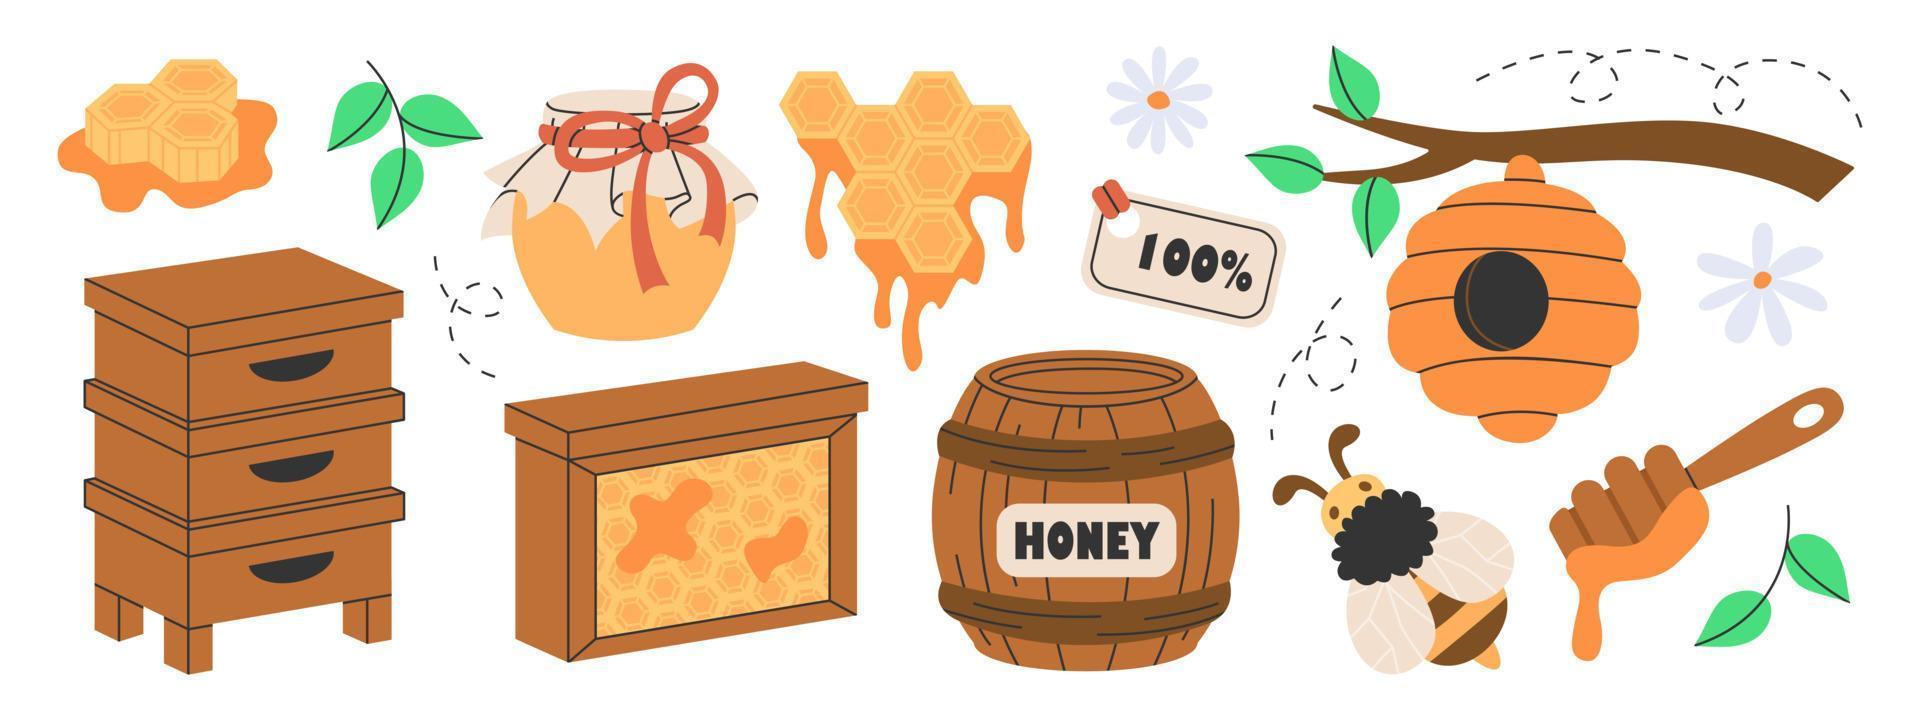 conjunto de atributos de producción de miel, apicultura o apicultura. colmena de madera, panales hexagonales, abeja, miel en frasco de vidrio, barril, flores, cuchara, colmena de abejas en el árbol. dulces naturales orgánicos de apiario. vector